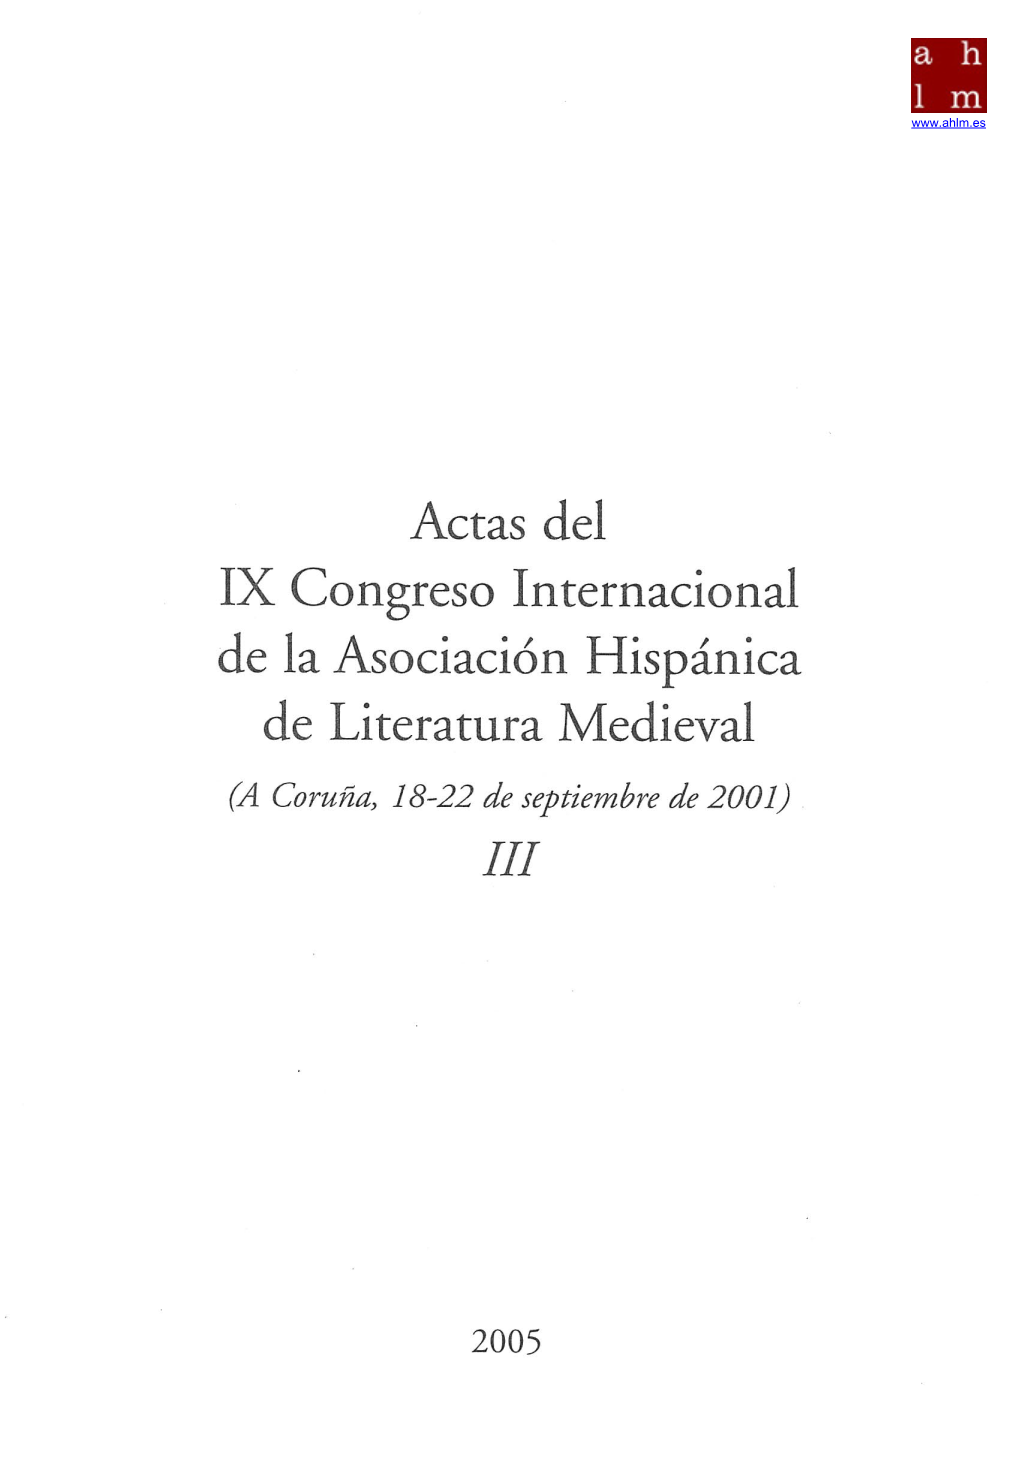 Actas Del IX Congreso Internacional De La Asociación Hispánica De Literatura Medieval